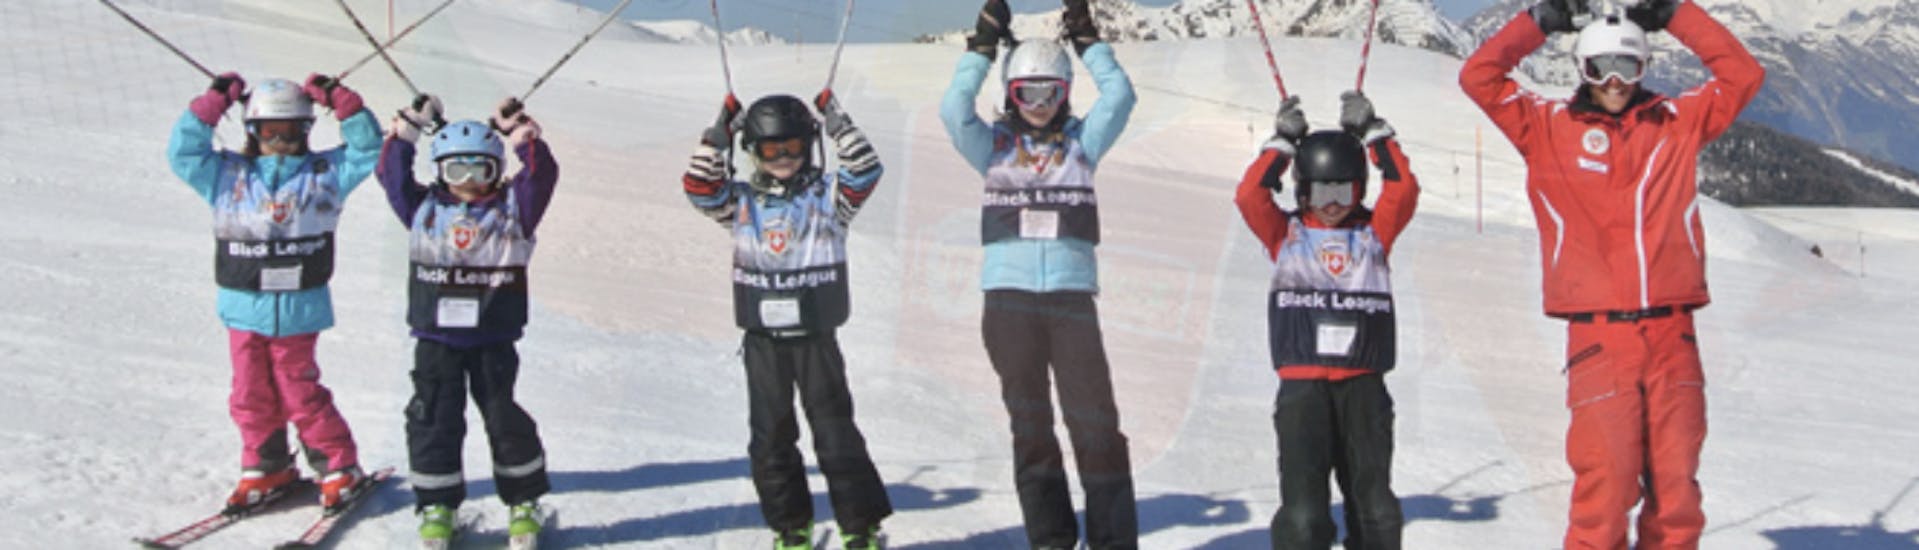 Skikurs für Kinder (5-12 Jahre) Tracouet.